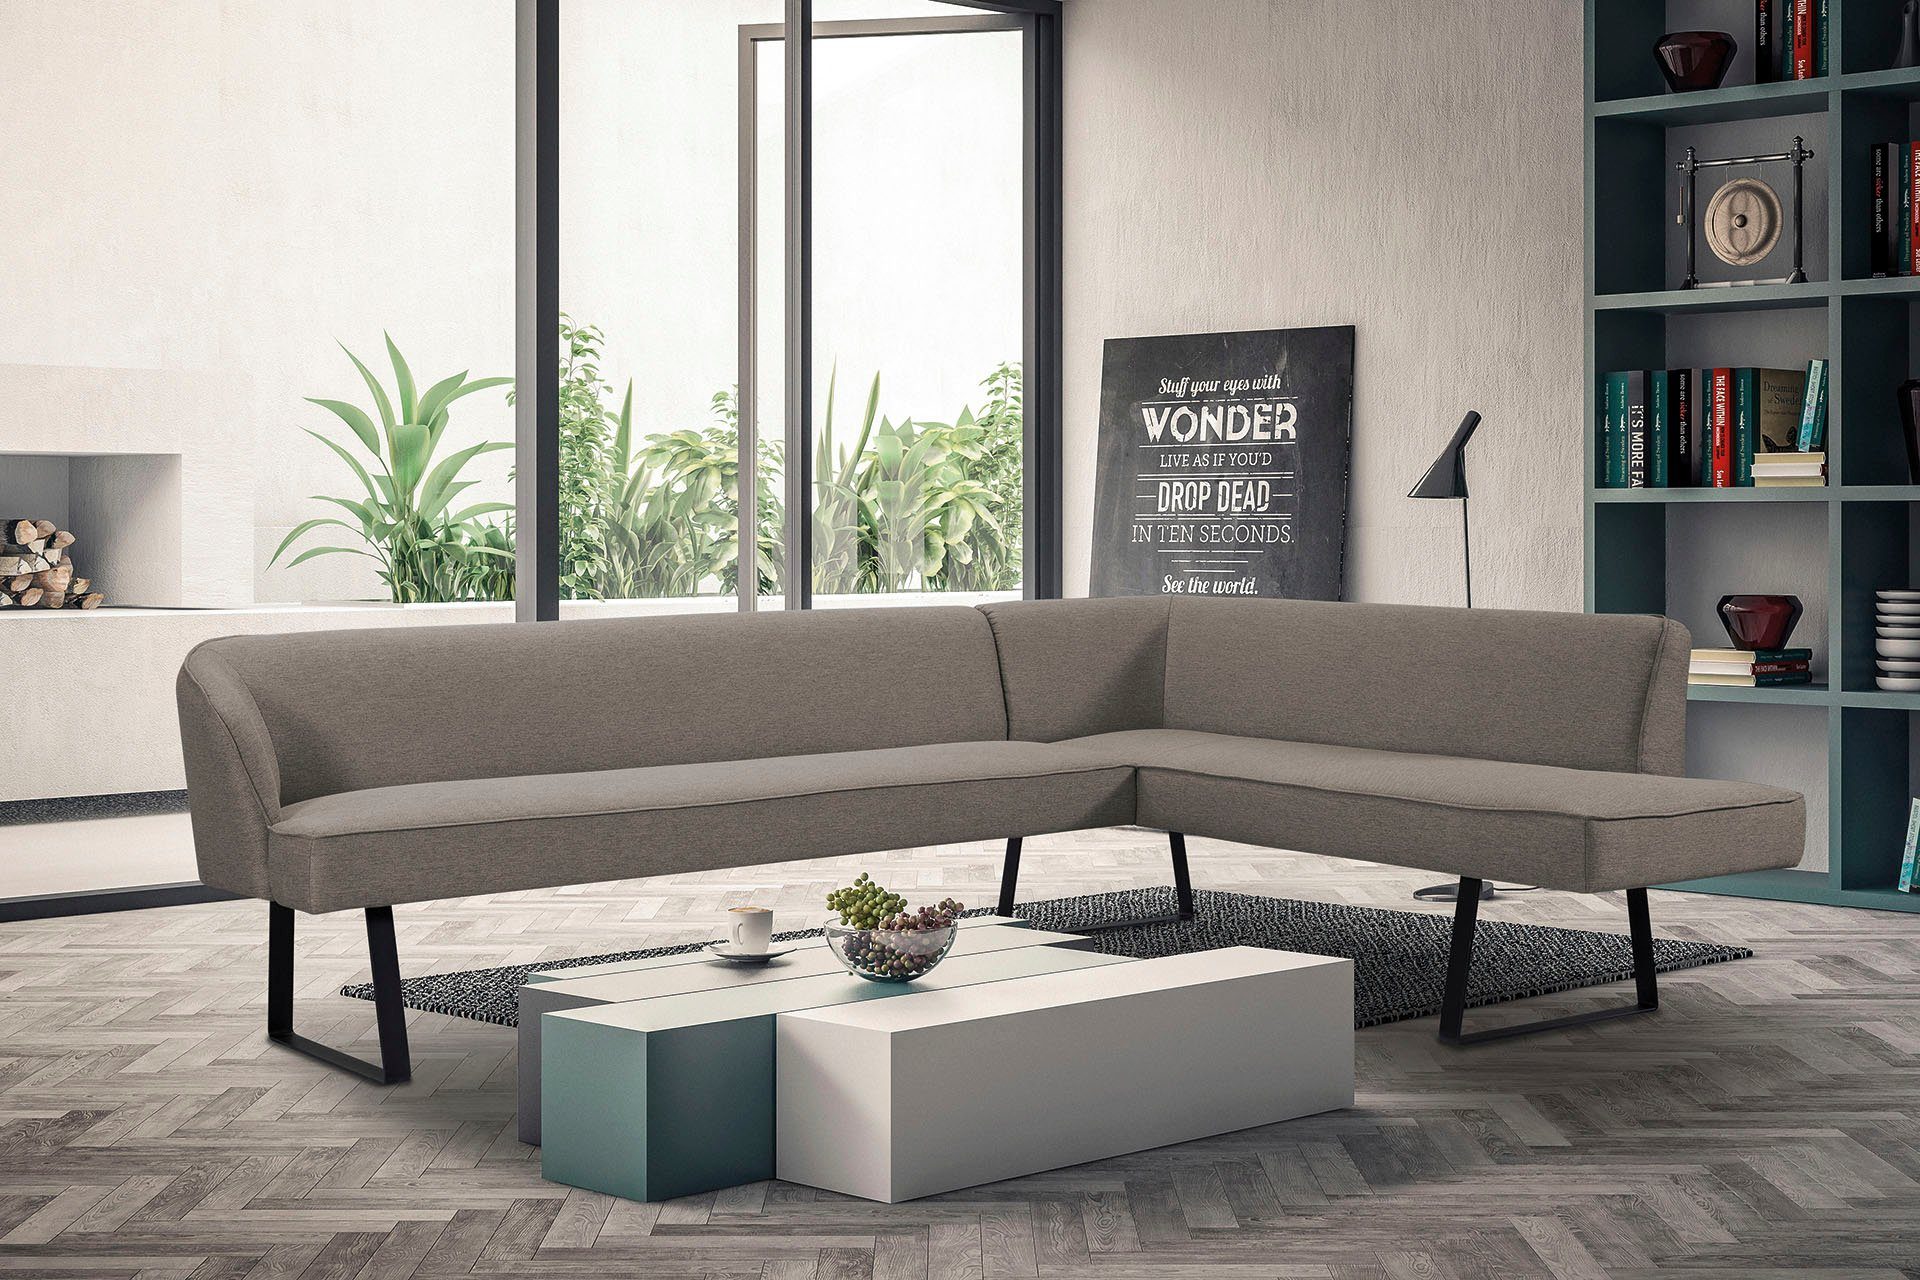 exxpo - sofa und Bezug mit Qualitäten Americano, fashion verschiedenen in Metallfüßen, Keder Eckbank